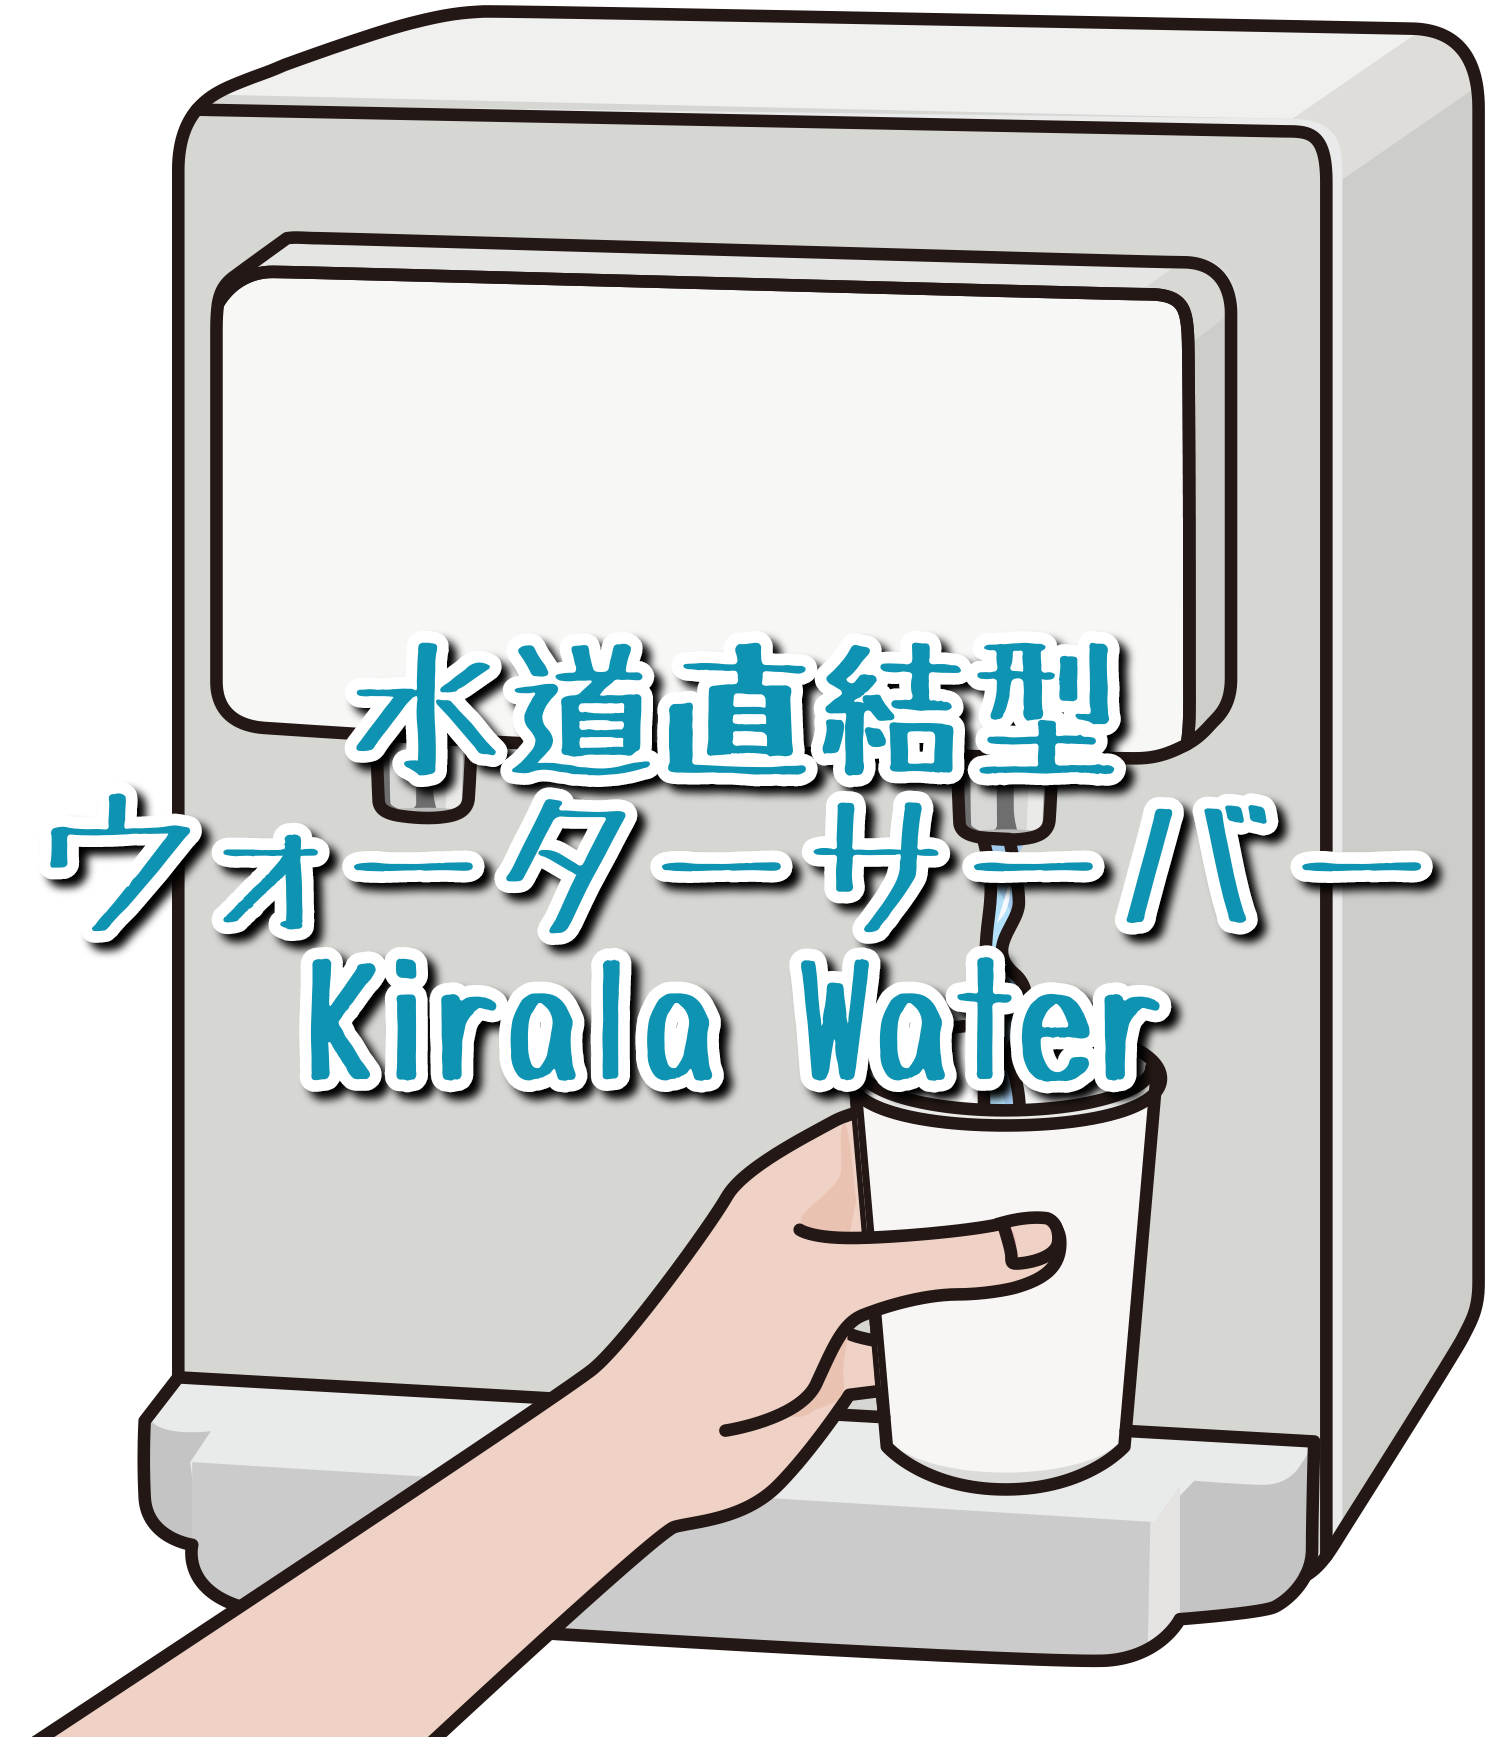 この記事ではウォーターサーバーKirala Waterを紹介しています。